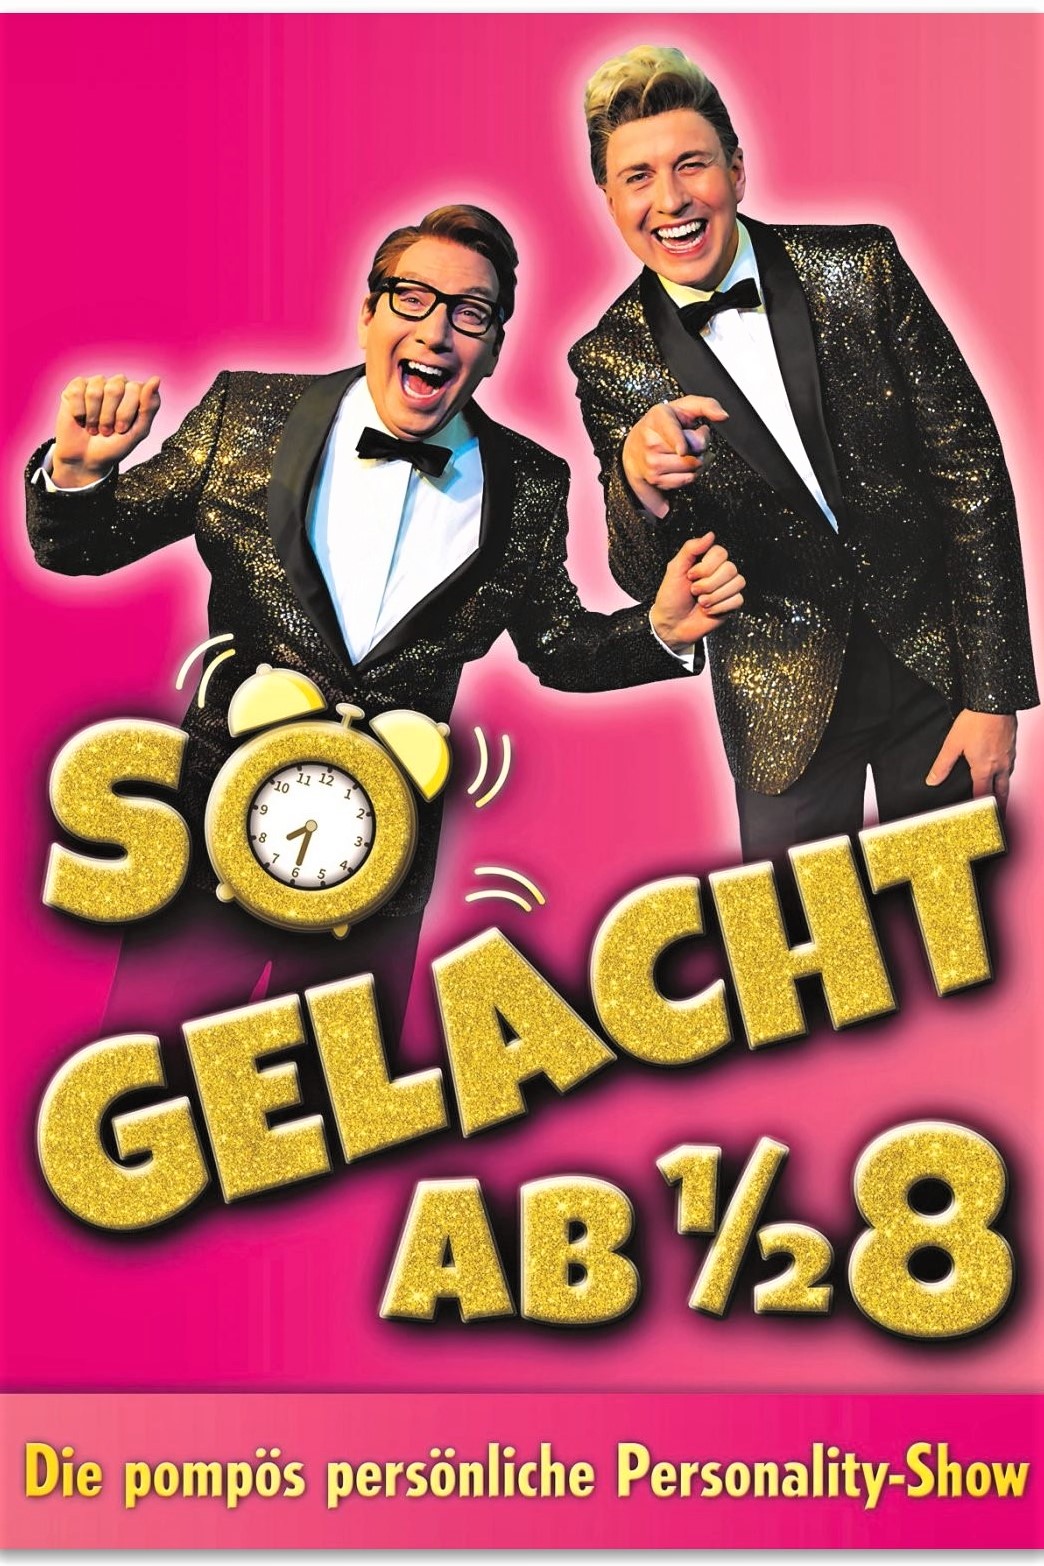 https://theaterpalast.de/so-gelacht-ab-halb-8/